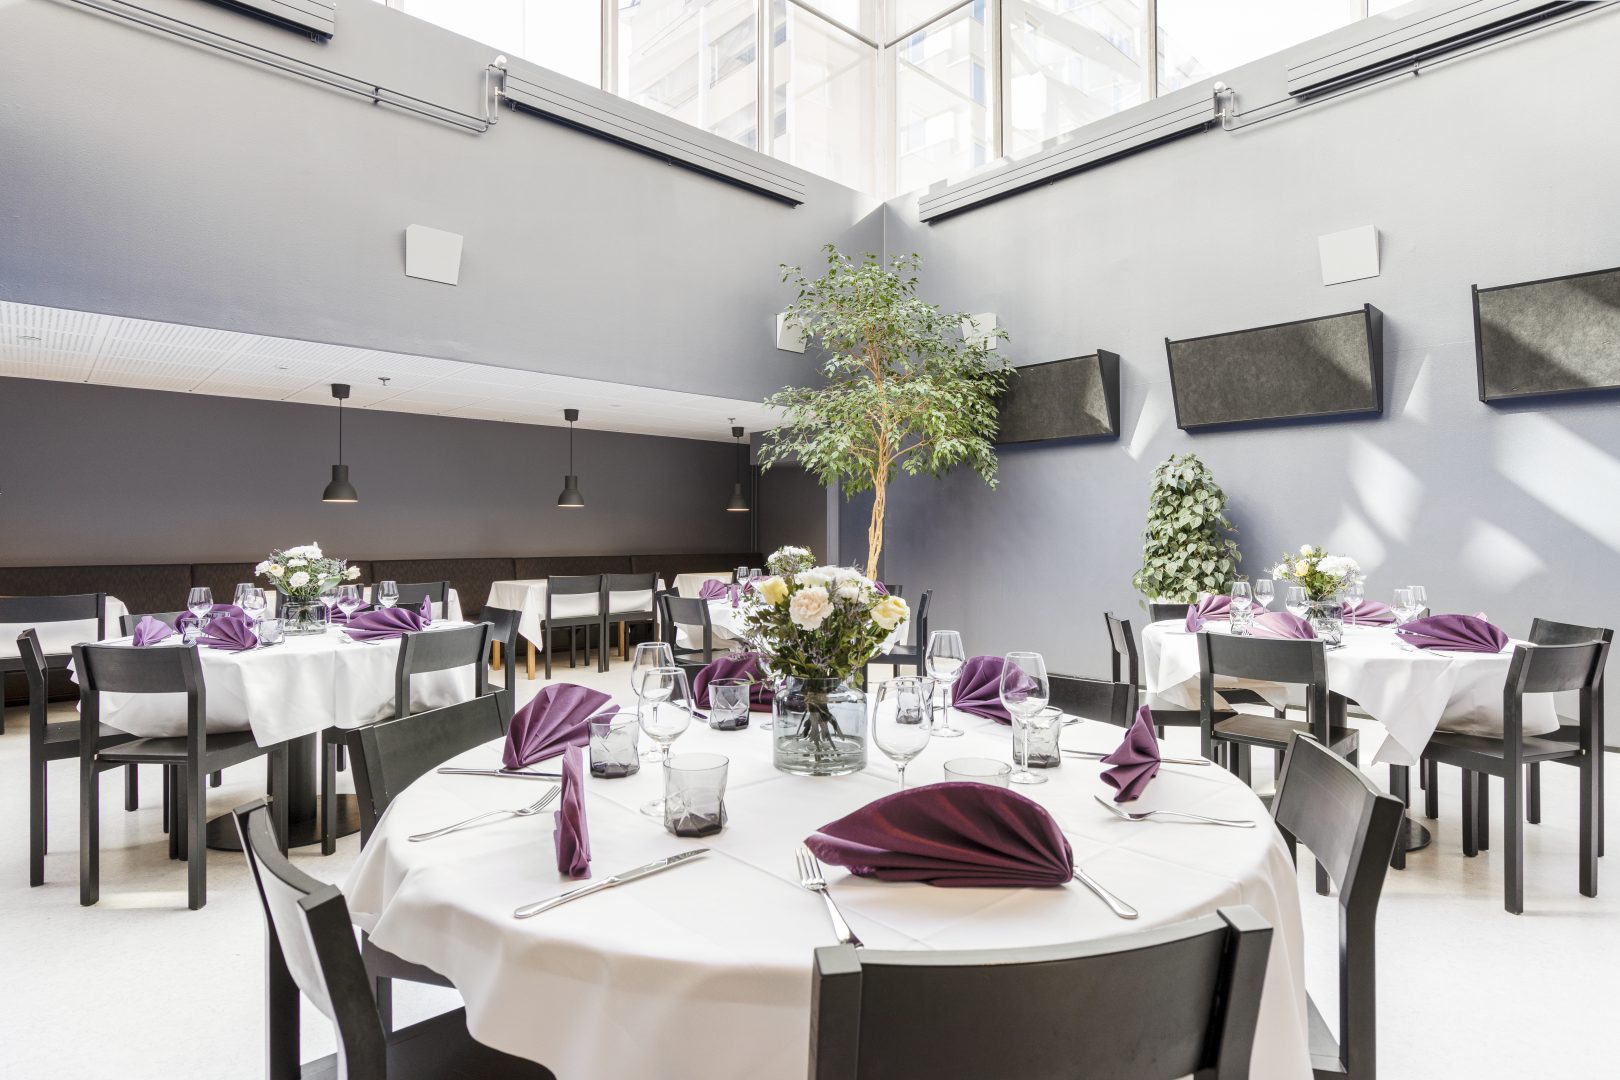 Domuksen ravintolasali on täynnä luonnonvaloa kattoikkunoiden ansiosta. Tilaan soveltuu erityisen hyvin pyöreät pöydät.